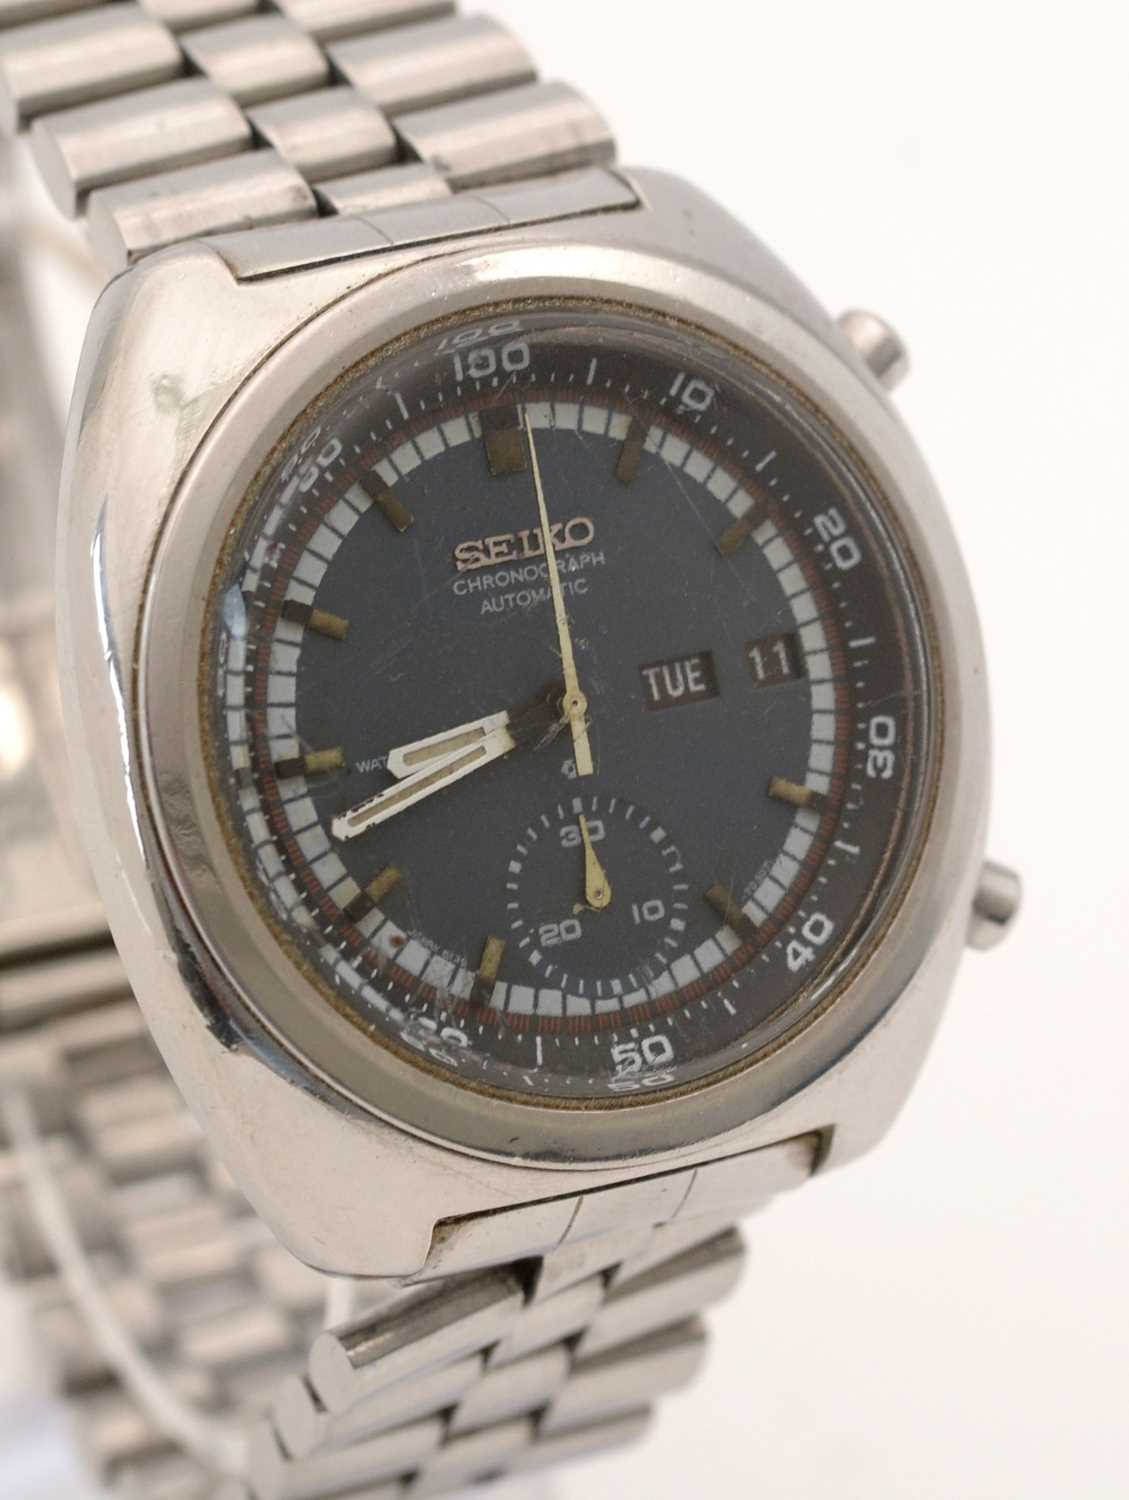 Seiko chronograph wristwatch.